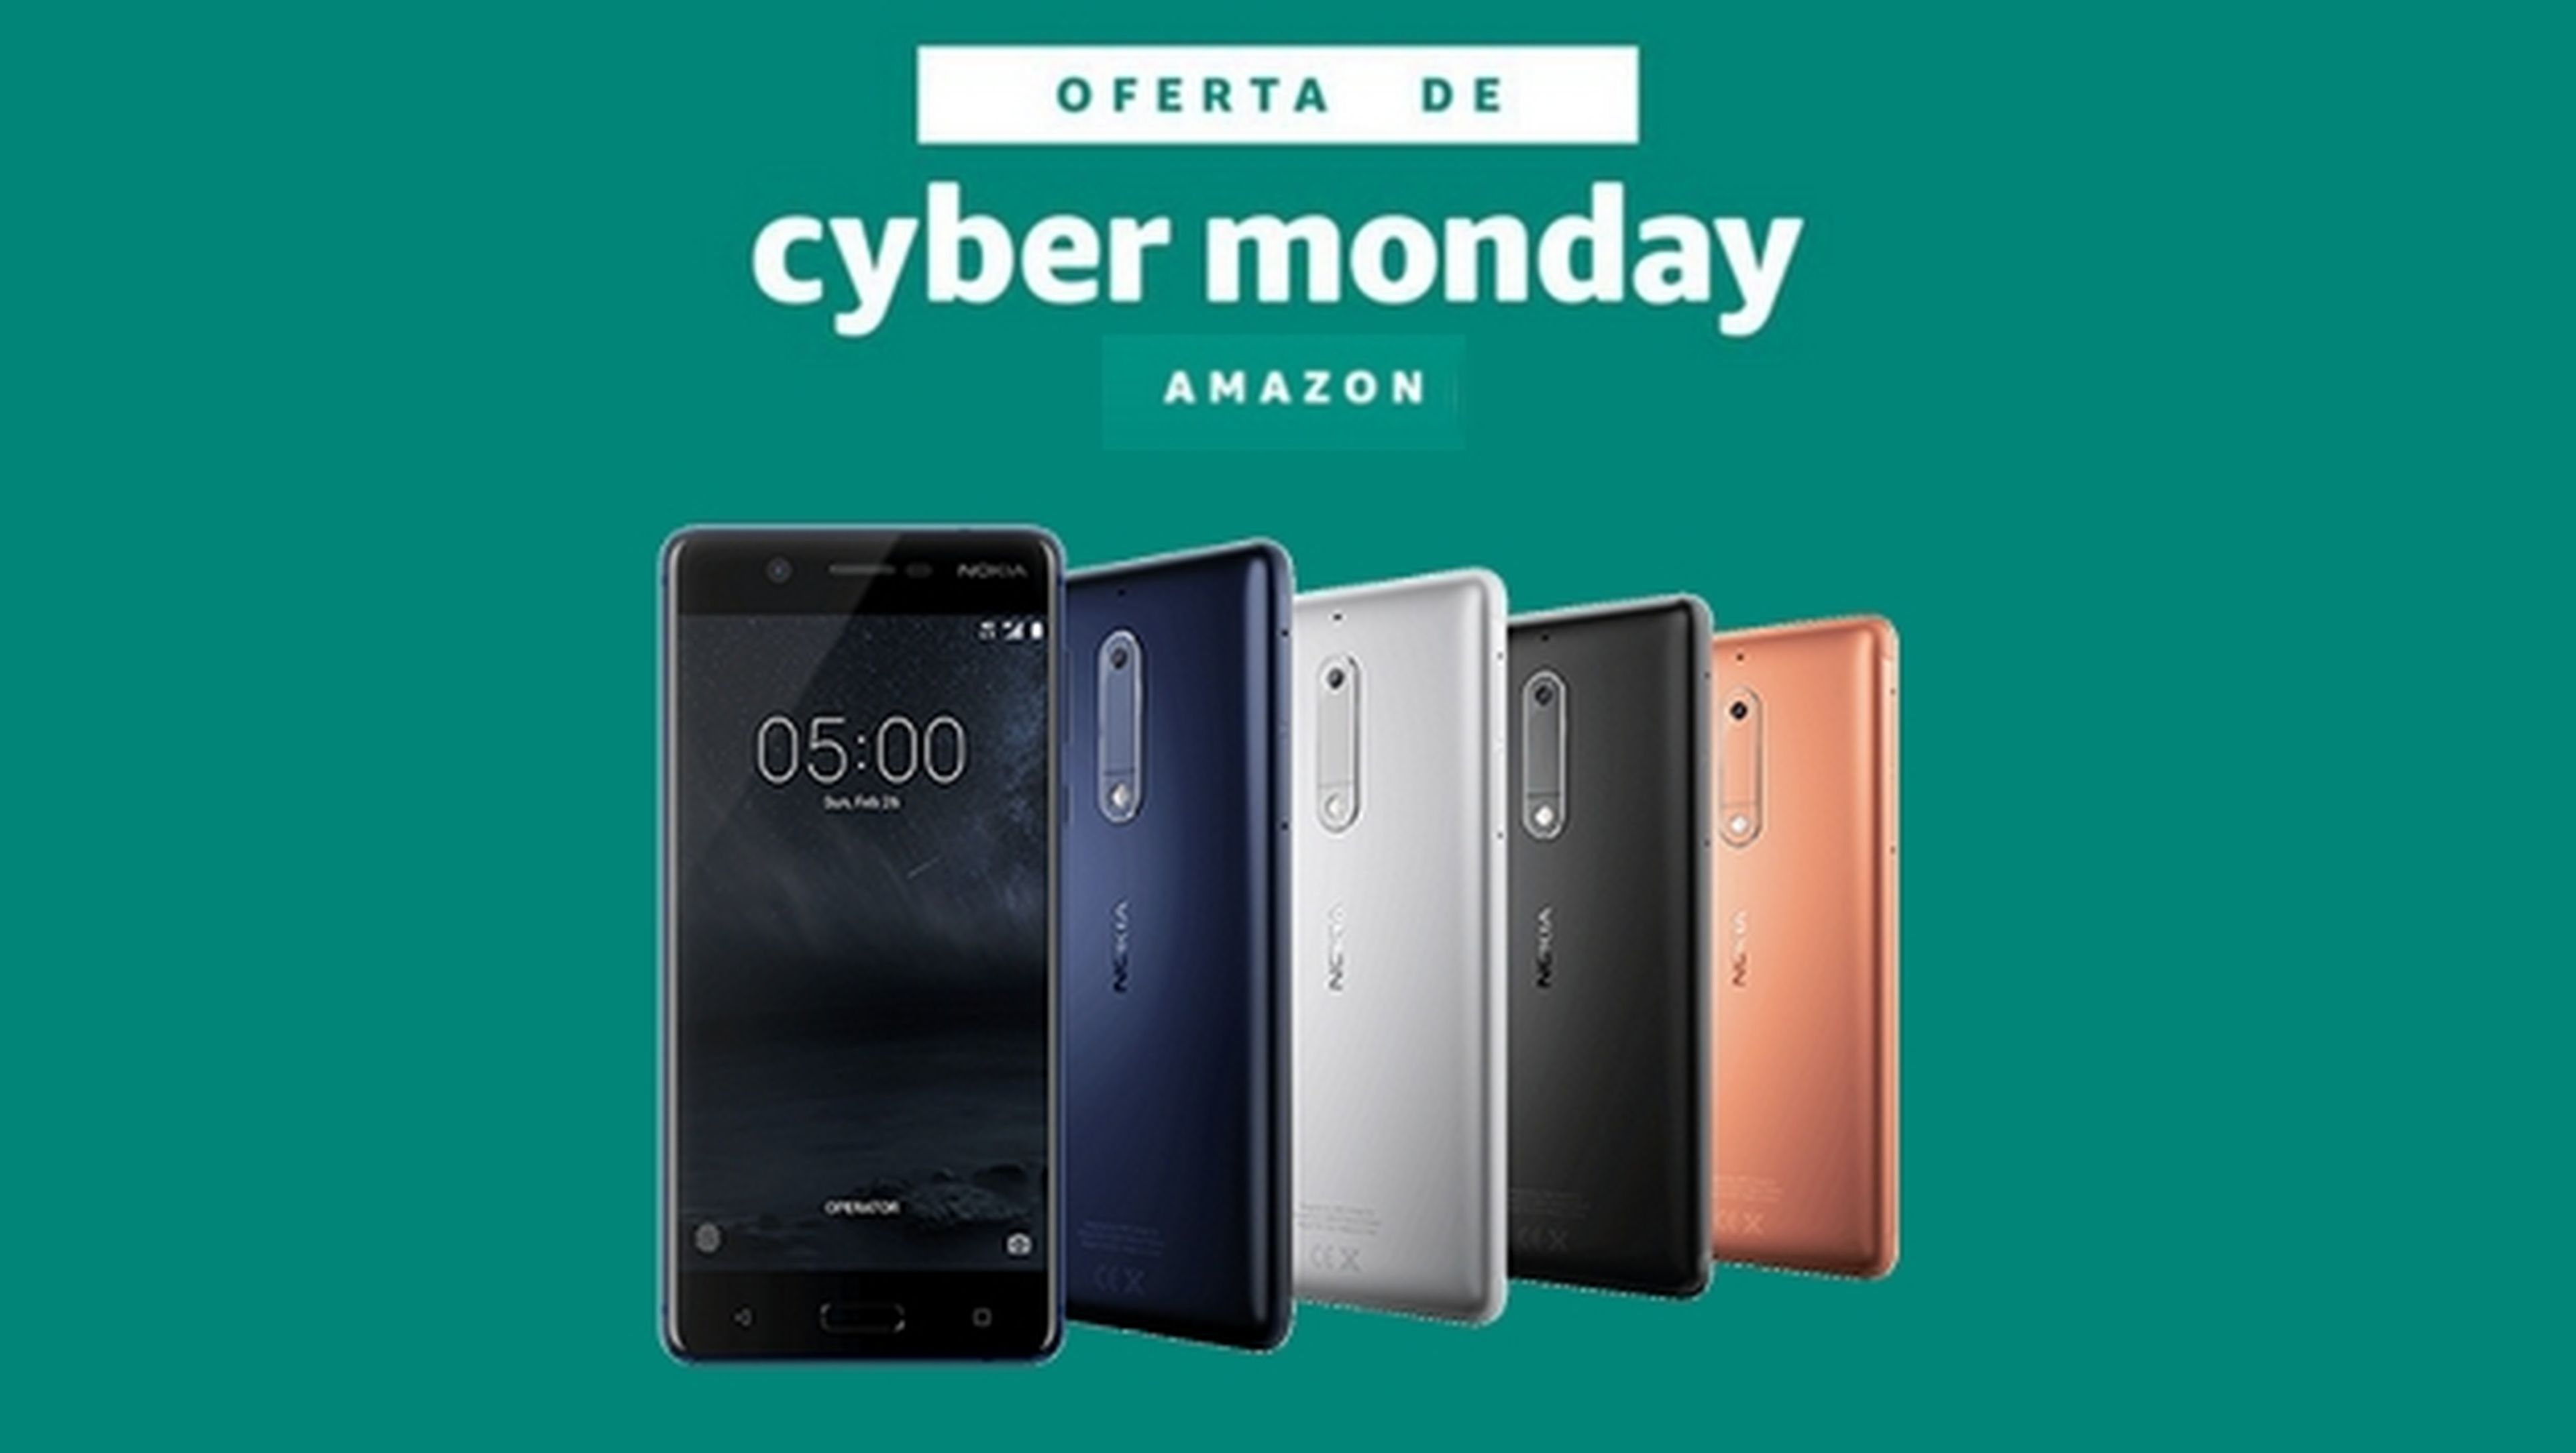 Nokia 5 en oferta por el Cyber Monday en Amazon, ¿merece la pena?